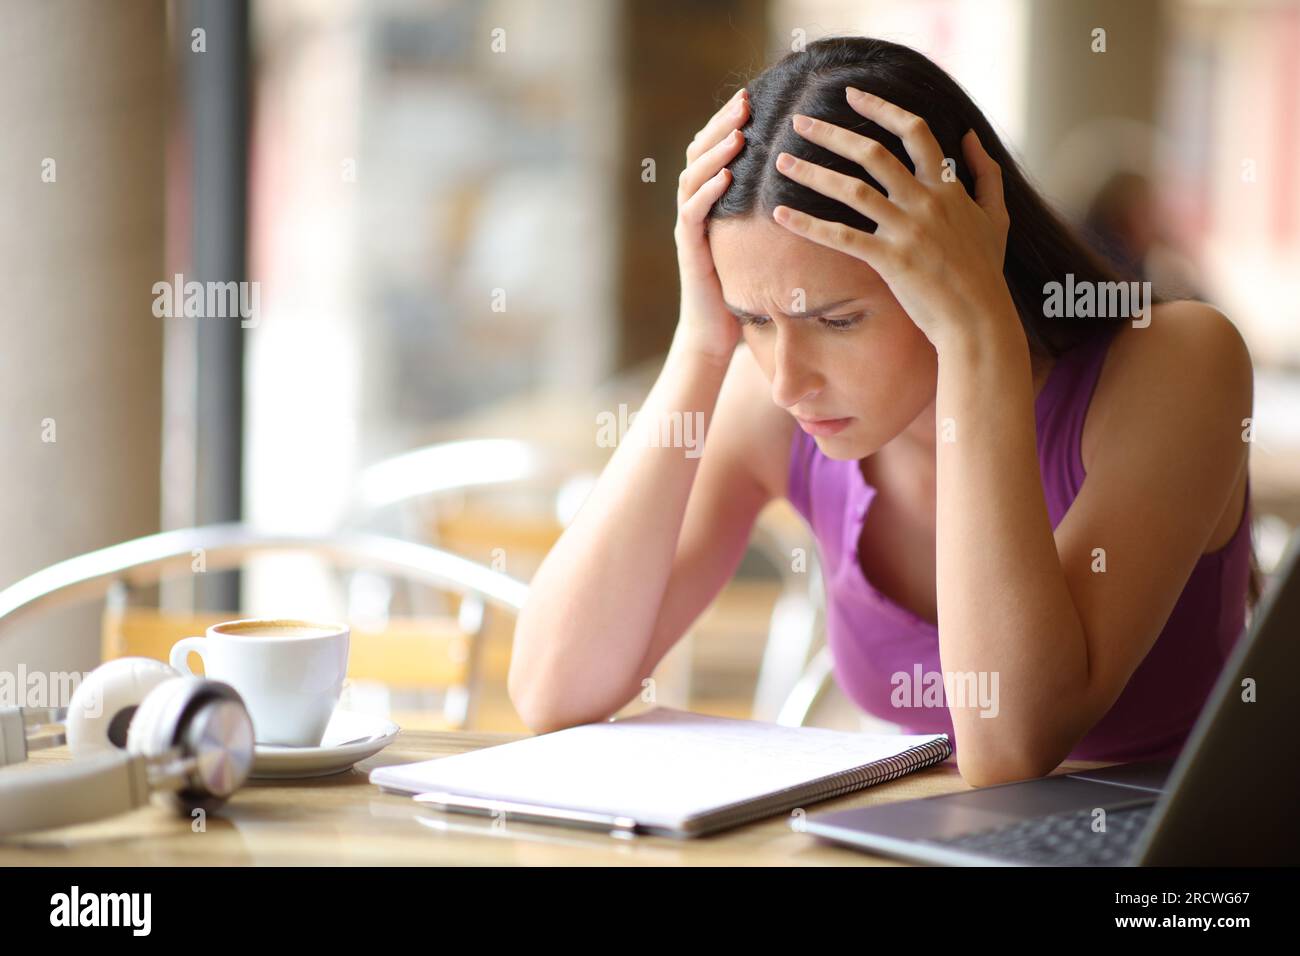 Besorgte Schülerin, die versucht hat, sich eine Lektion aus dem Notizbuch auf einer Barterrasse auswendig zu lernen Stockfoto